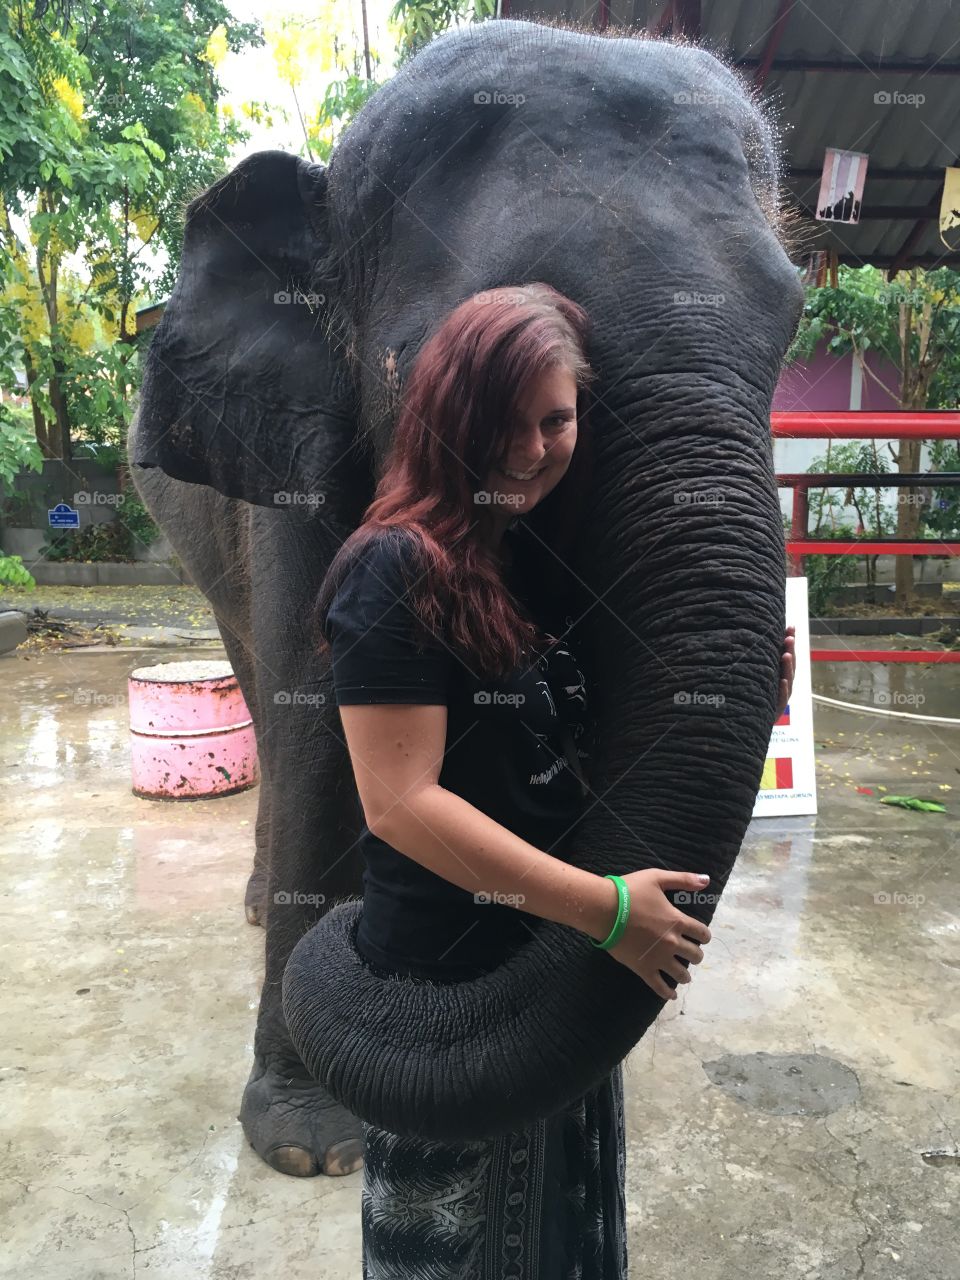 Elephant hugs 